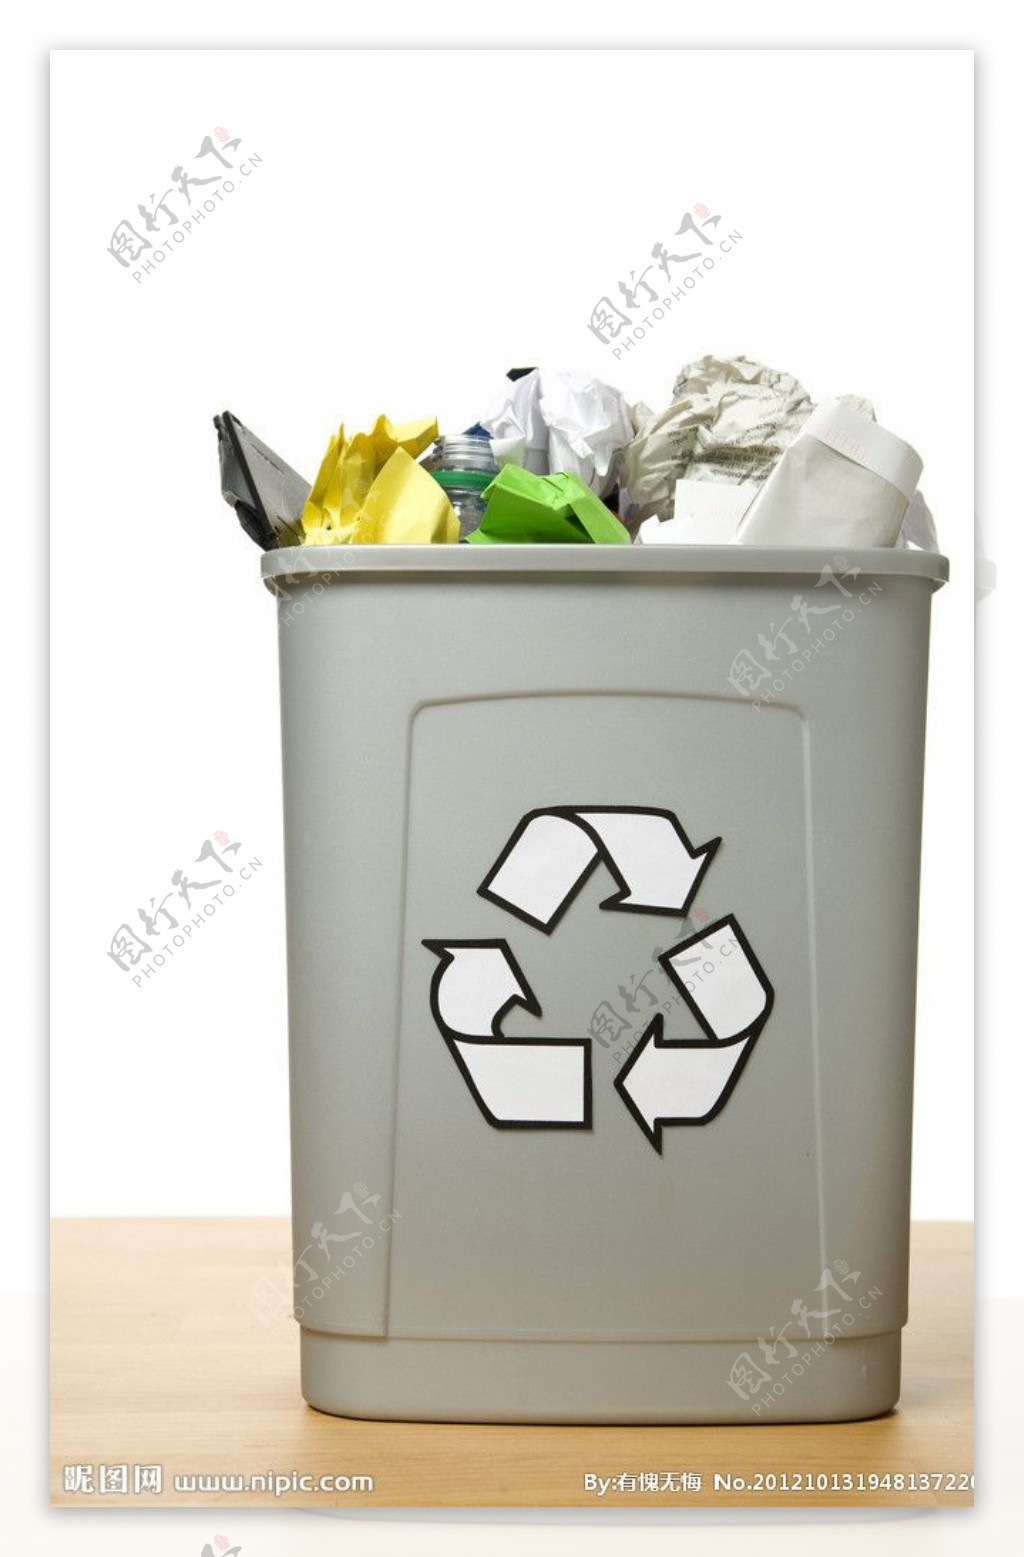 垃圾桶回收利用图片